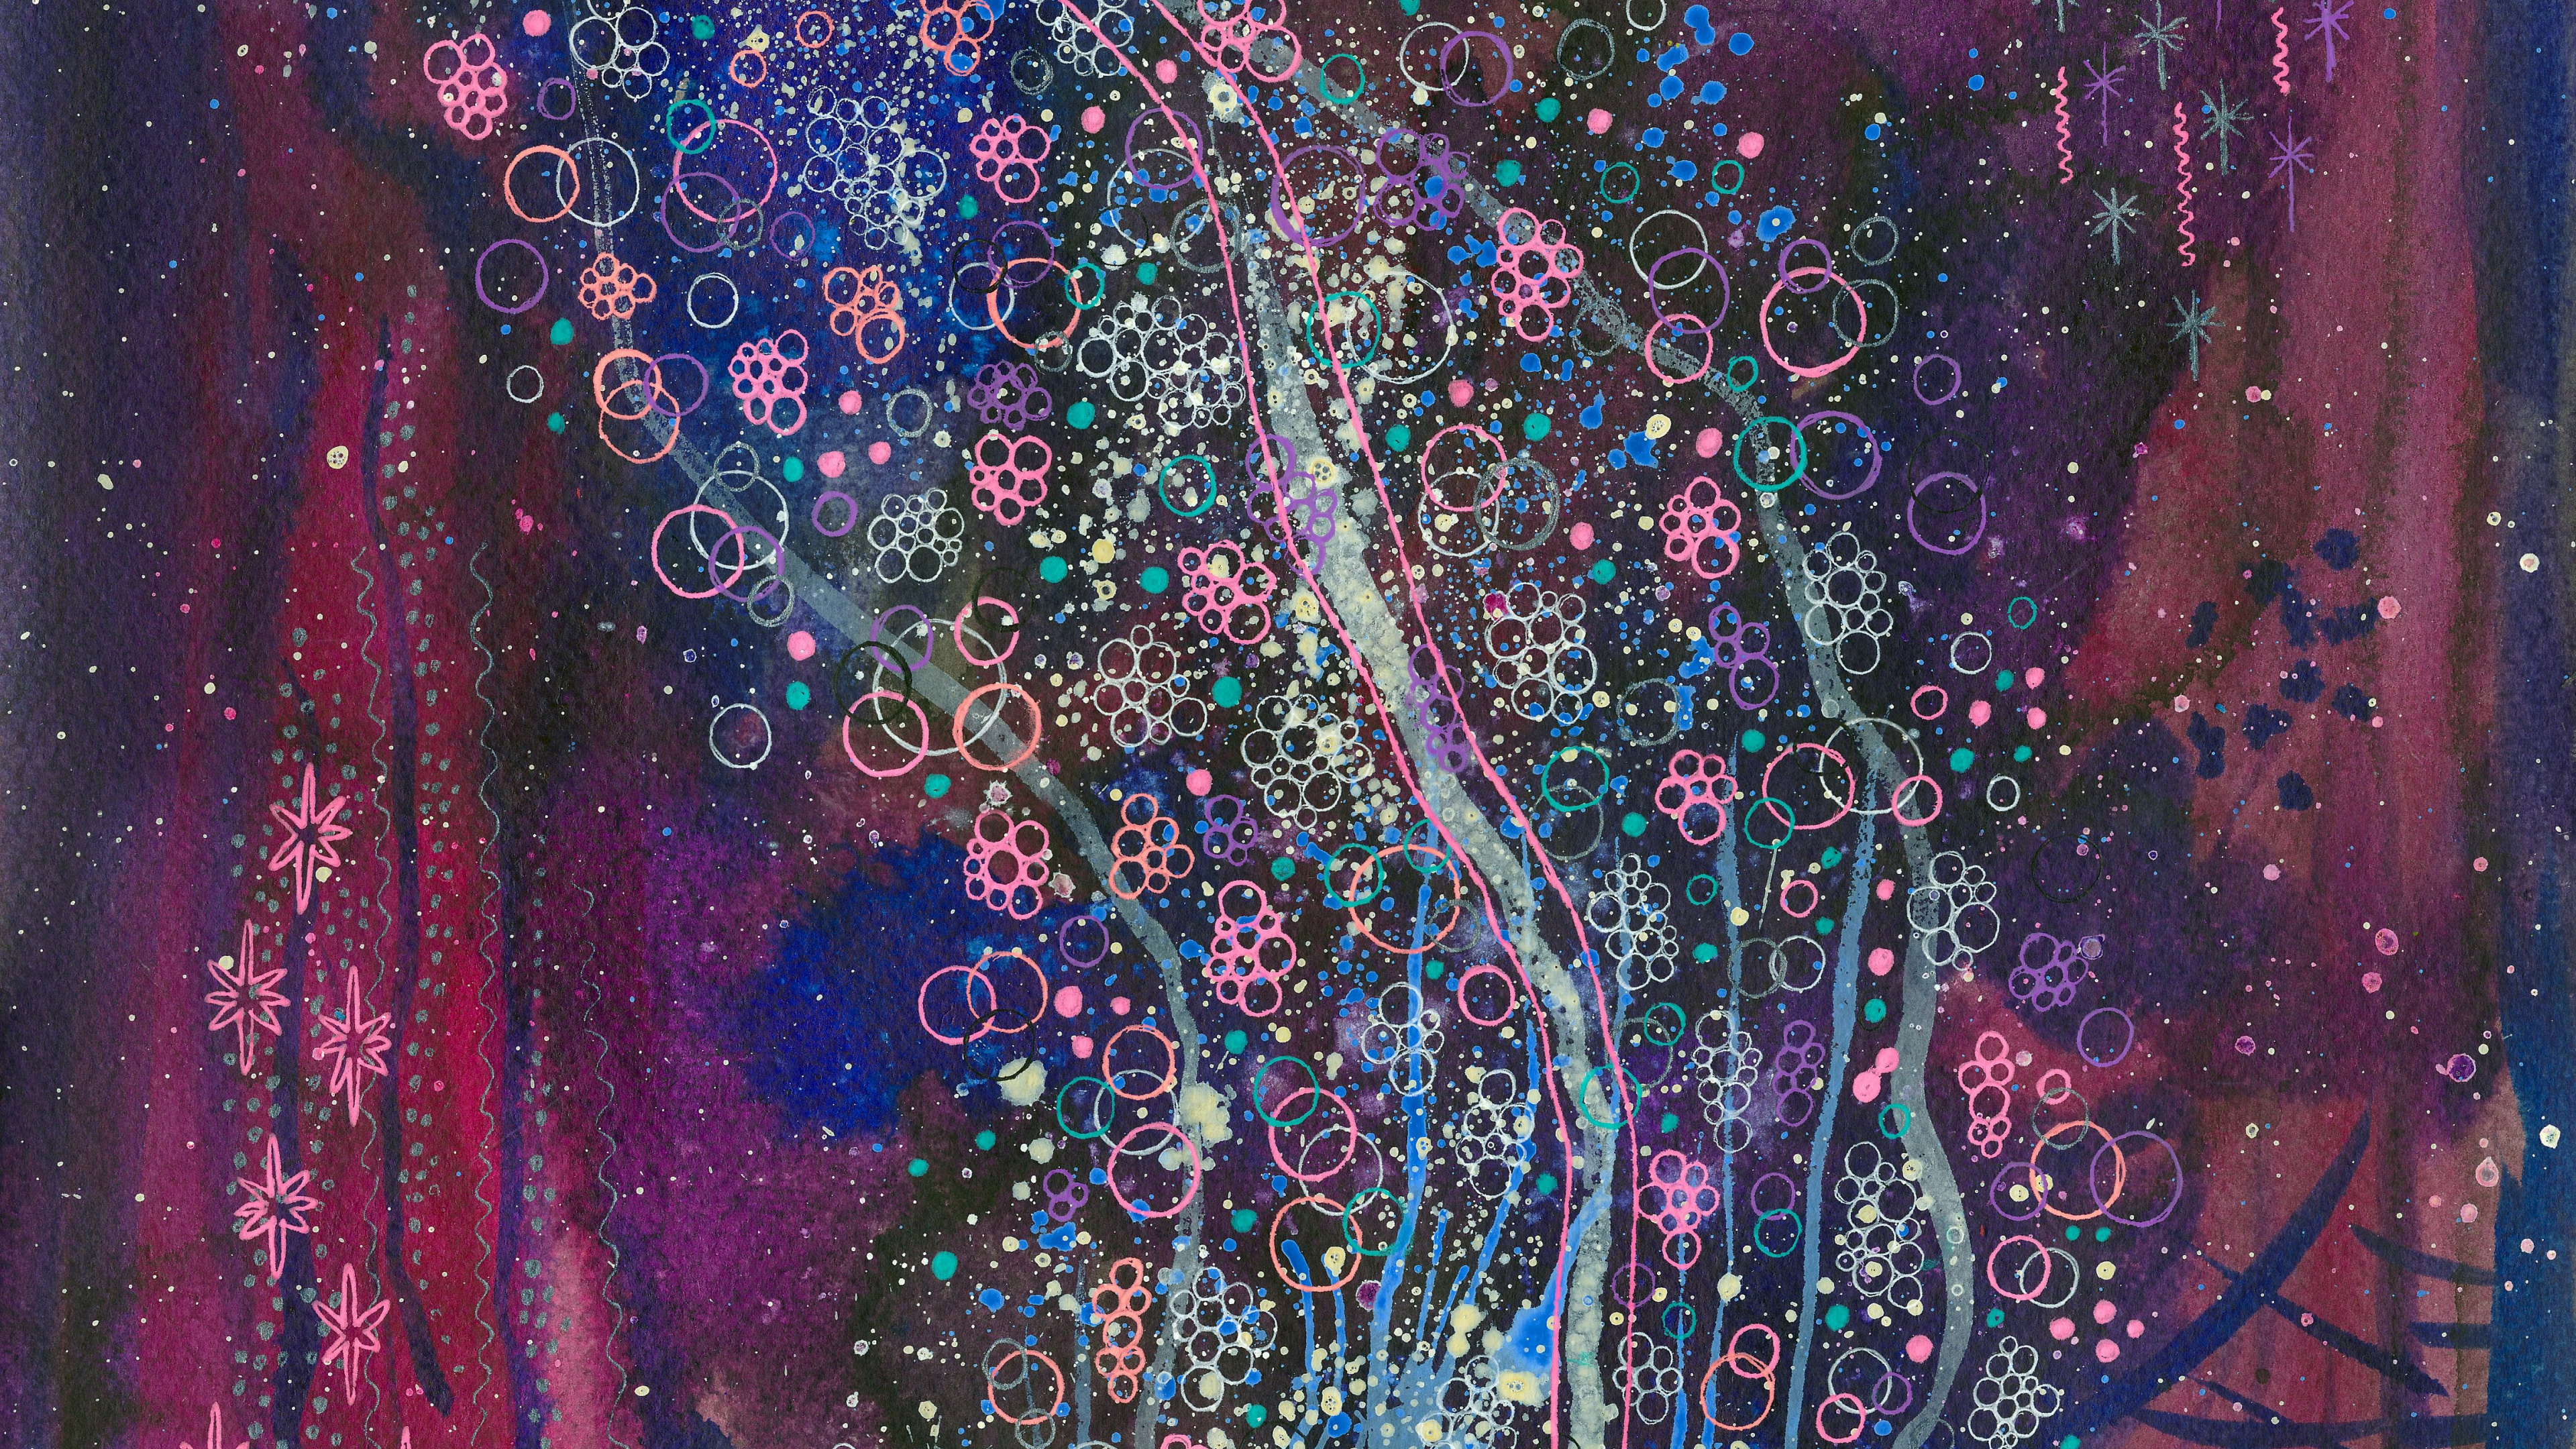 水彩画, 丙烯酸涂料, 紫色的, 现代艺术, 紫罗兰色 壁纸 3840x2160 允许